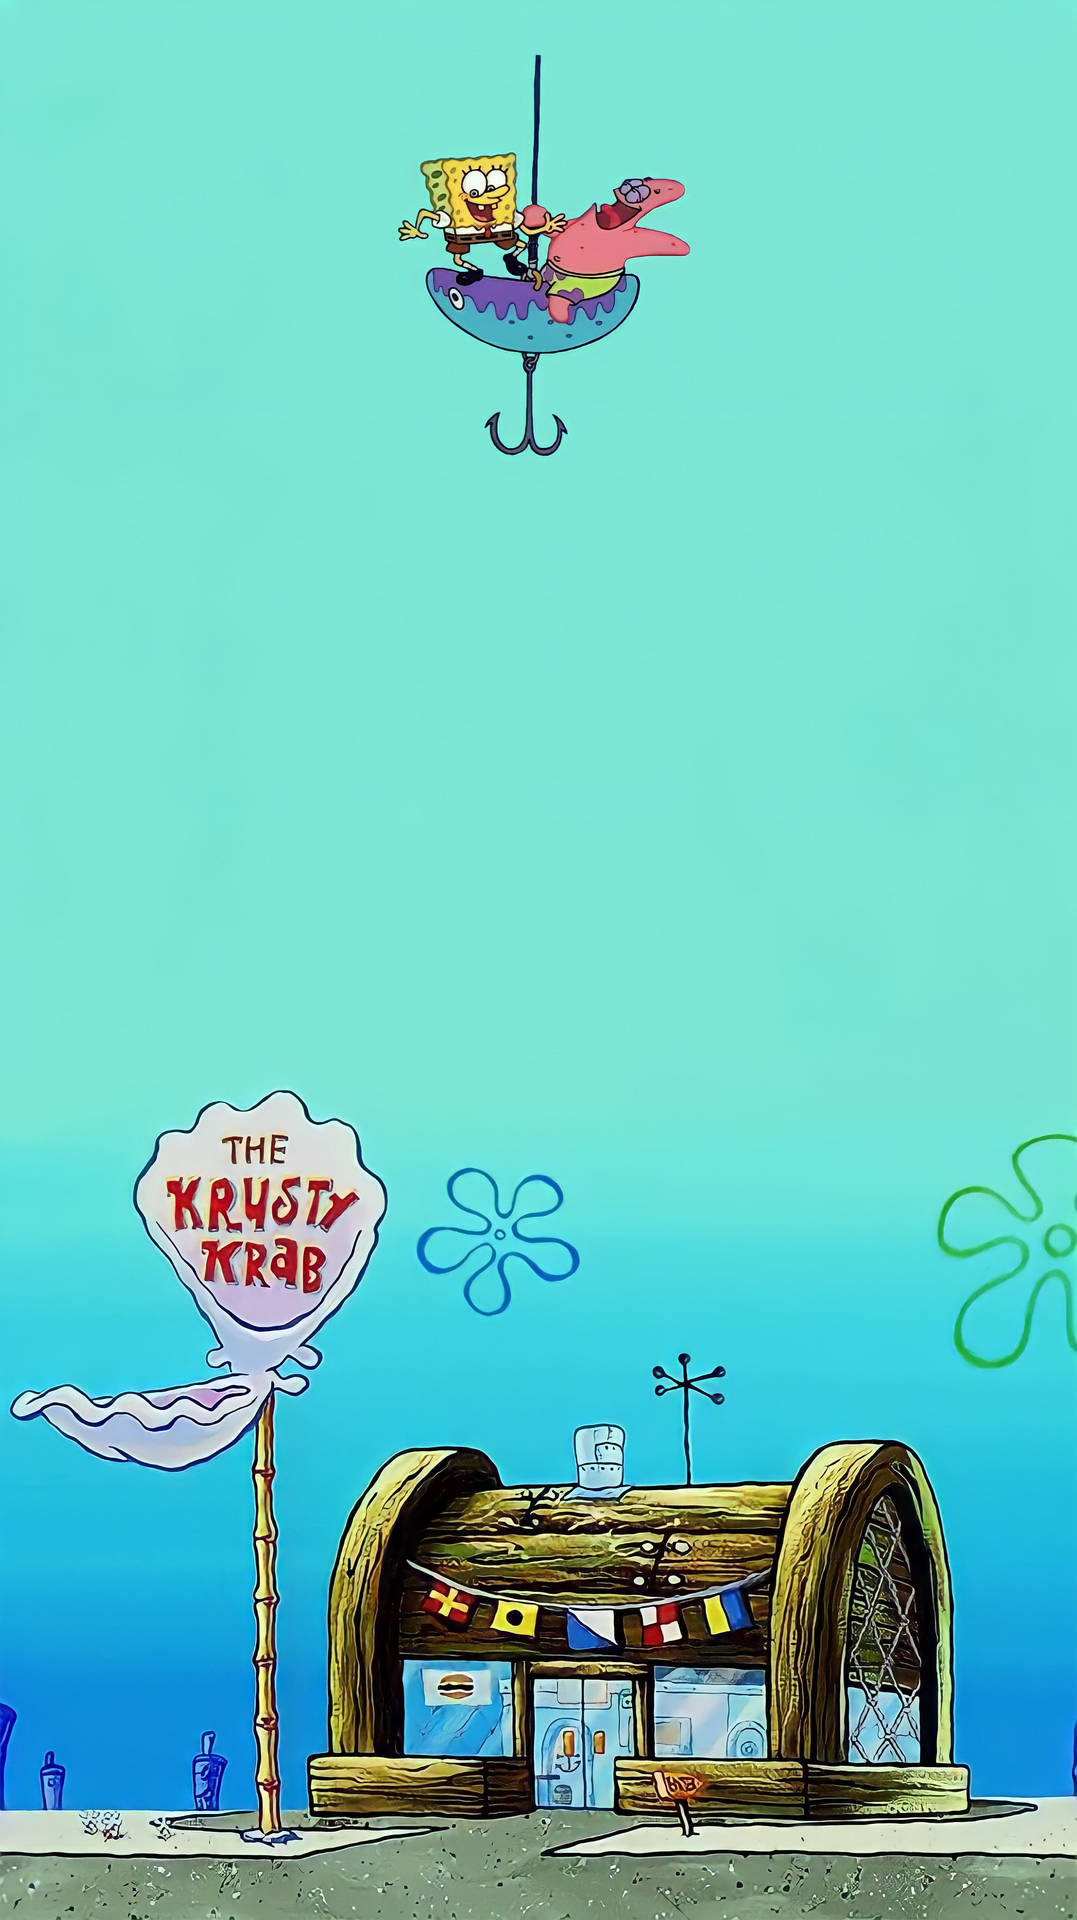 Spongebobredmi Note 9 Punch Hole Översättning: Spongebob-tema För Redmi Note 9 Med Punch Hole. Wallpaper